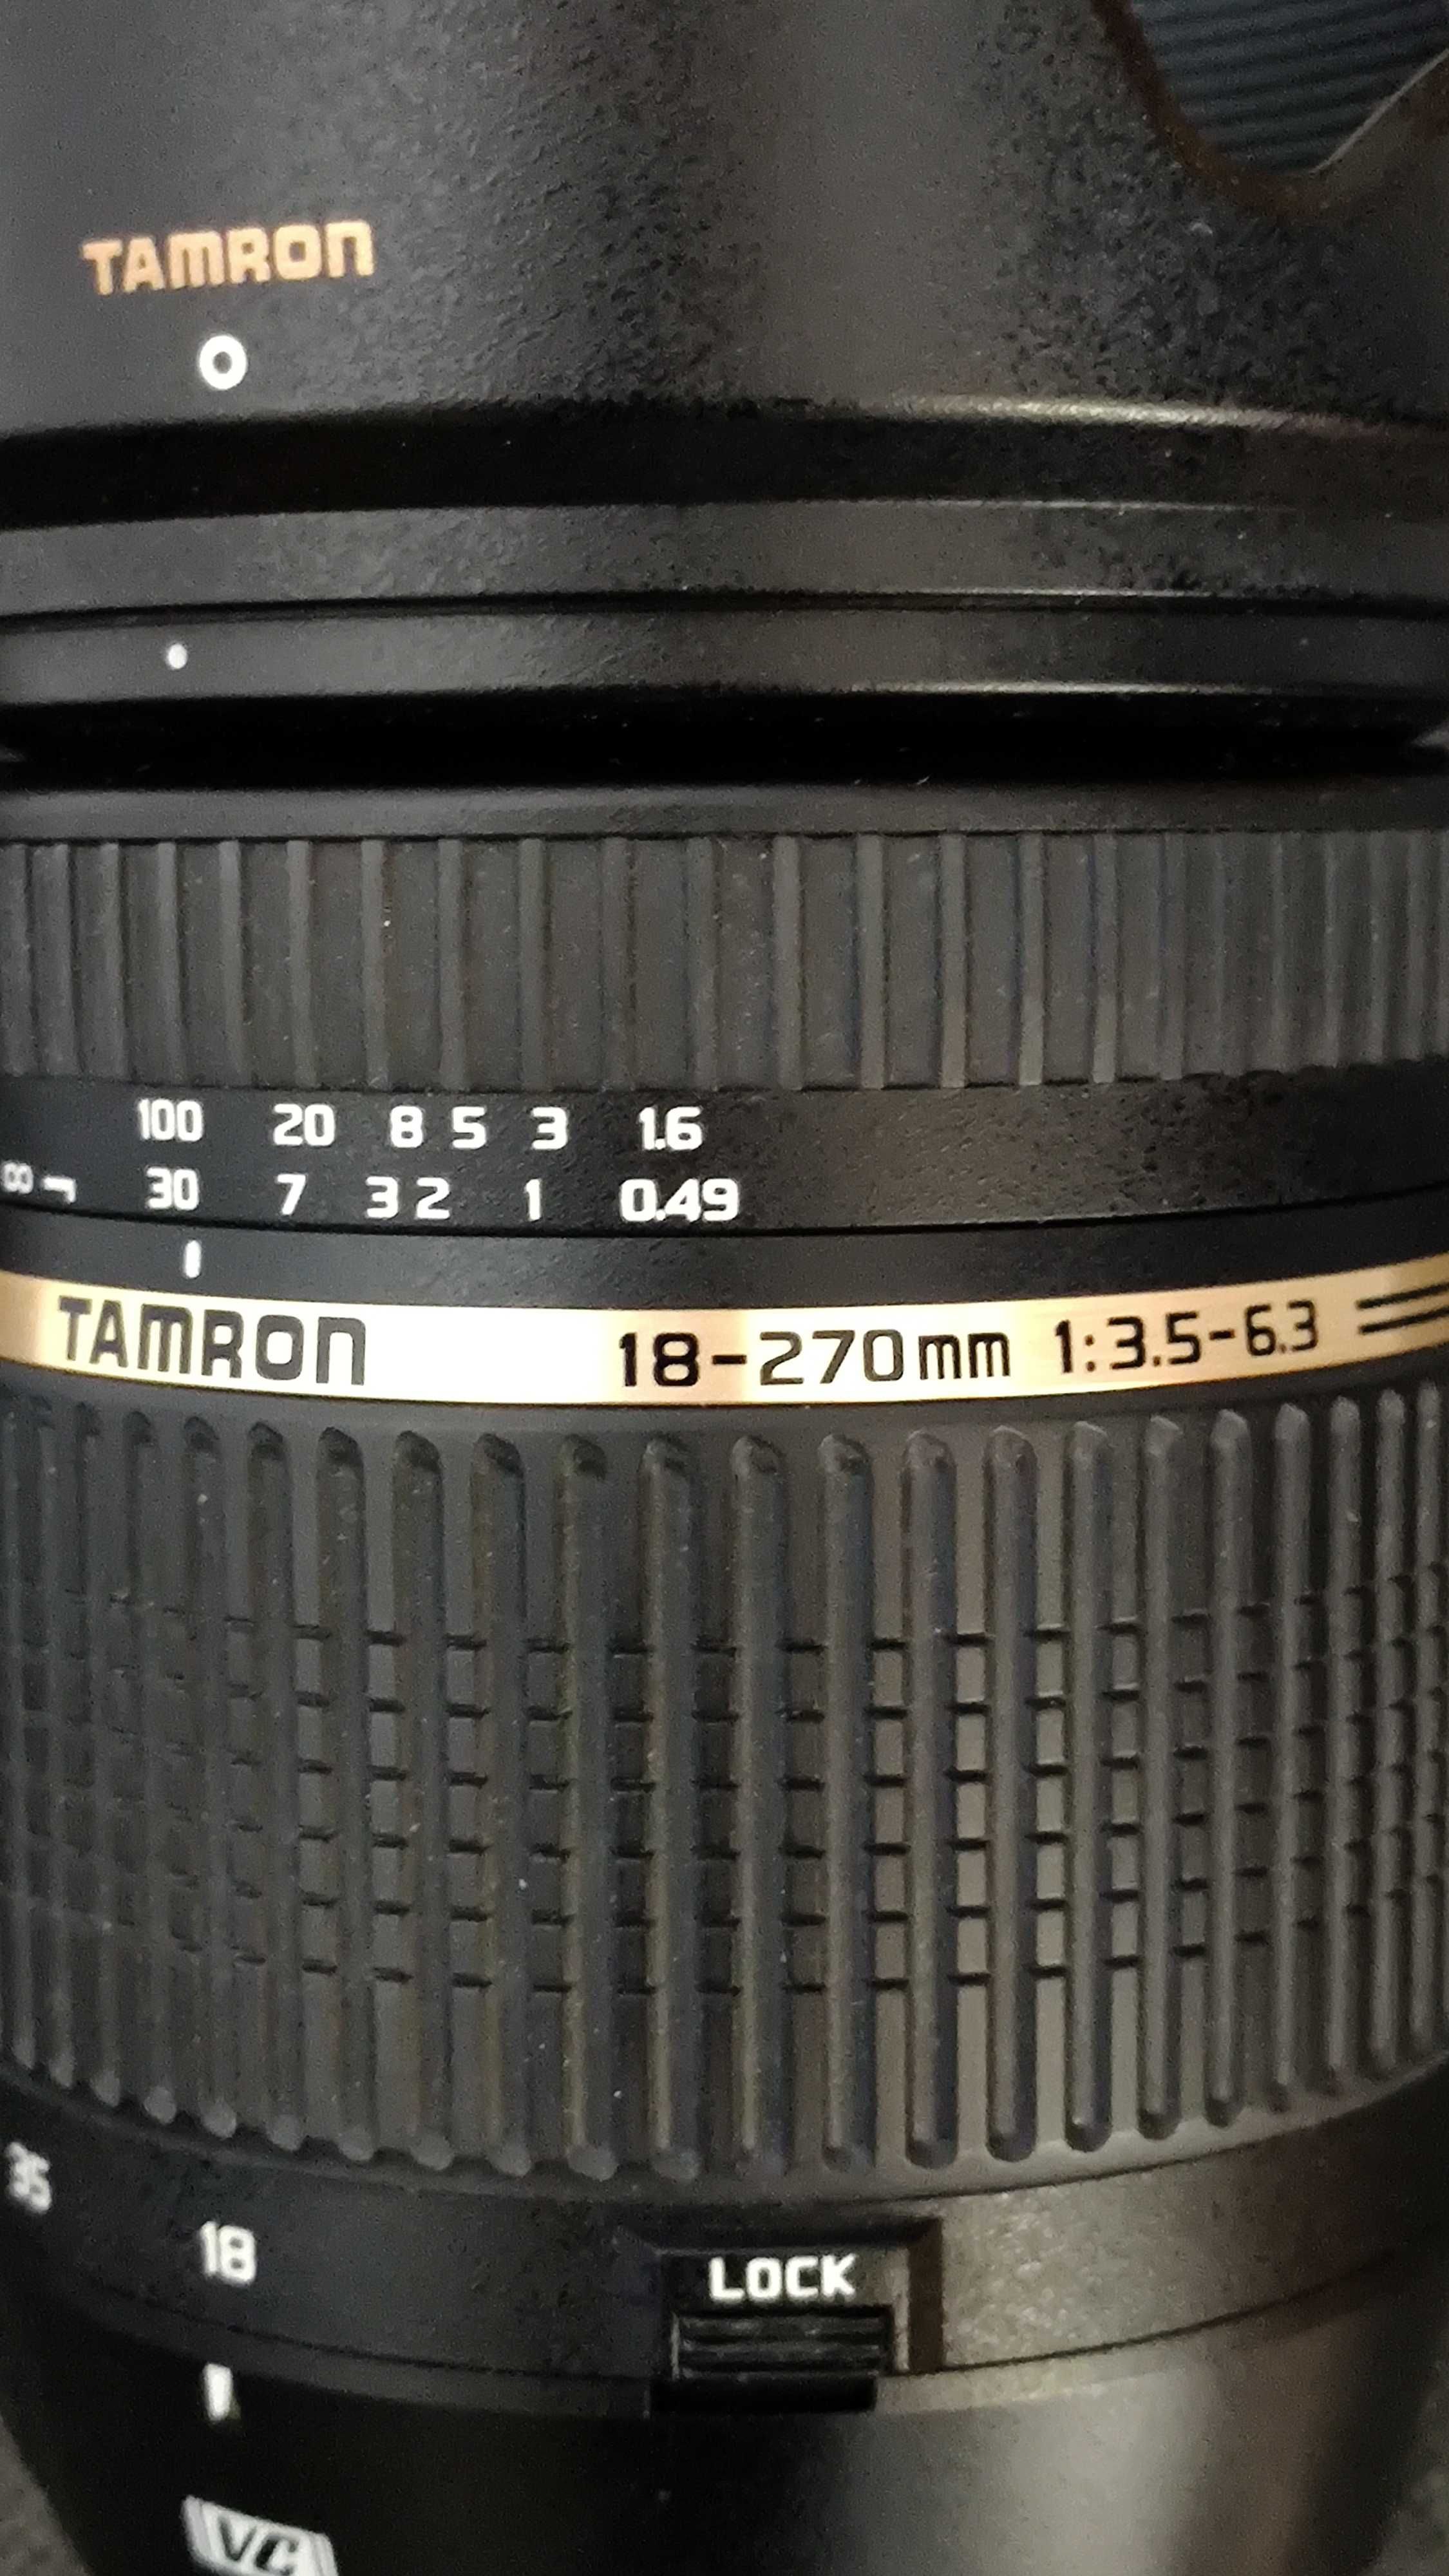 Obiectiv Tamron 18-270mm F/3.5-6.3 pt Canon AF + filtru Akira HMC 72mm